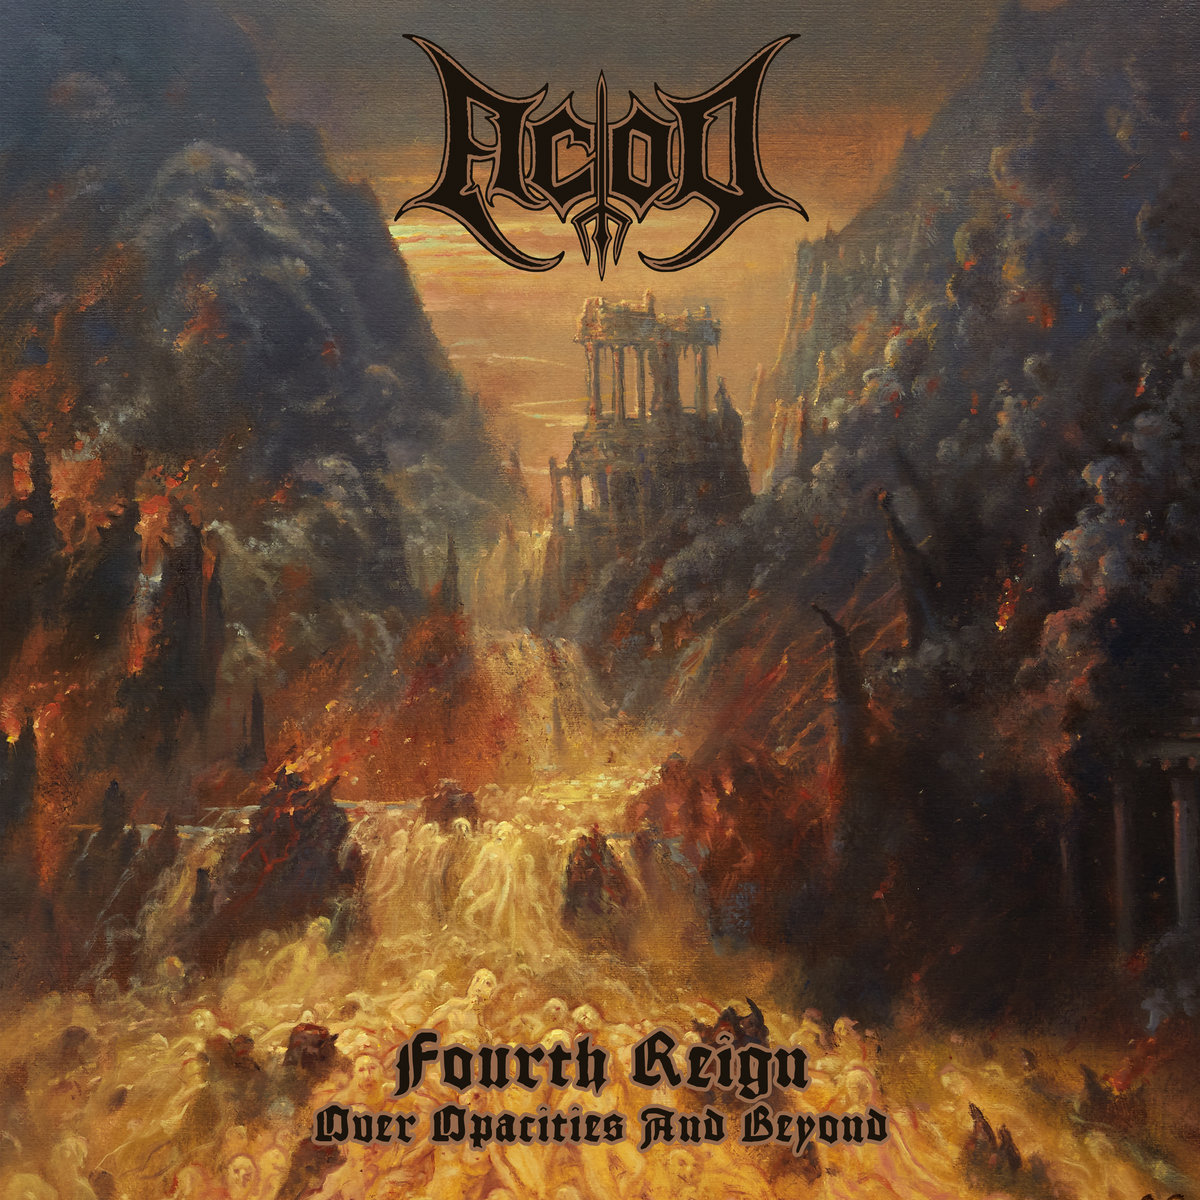 C'est très simple, ACOD s'est imposè comme une rèfèrence du Black Metal français actuelle, ce que cet album confirme. La puissance est au rendez-vous, la qualitè de production aussi.